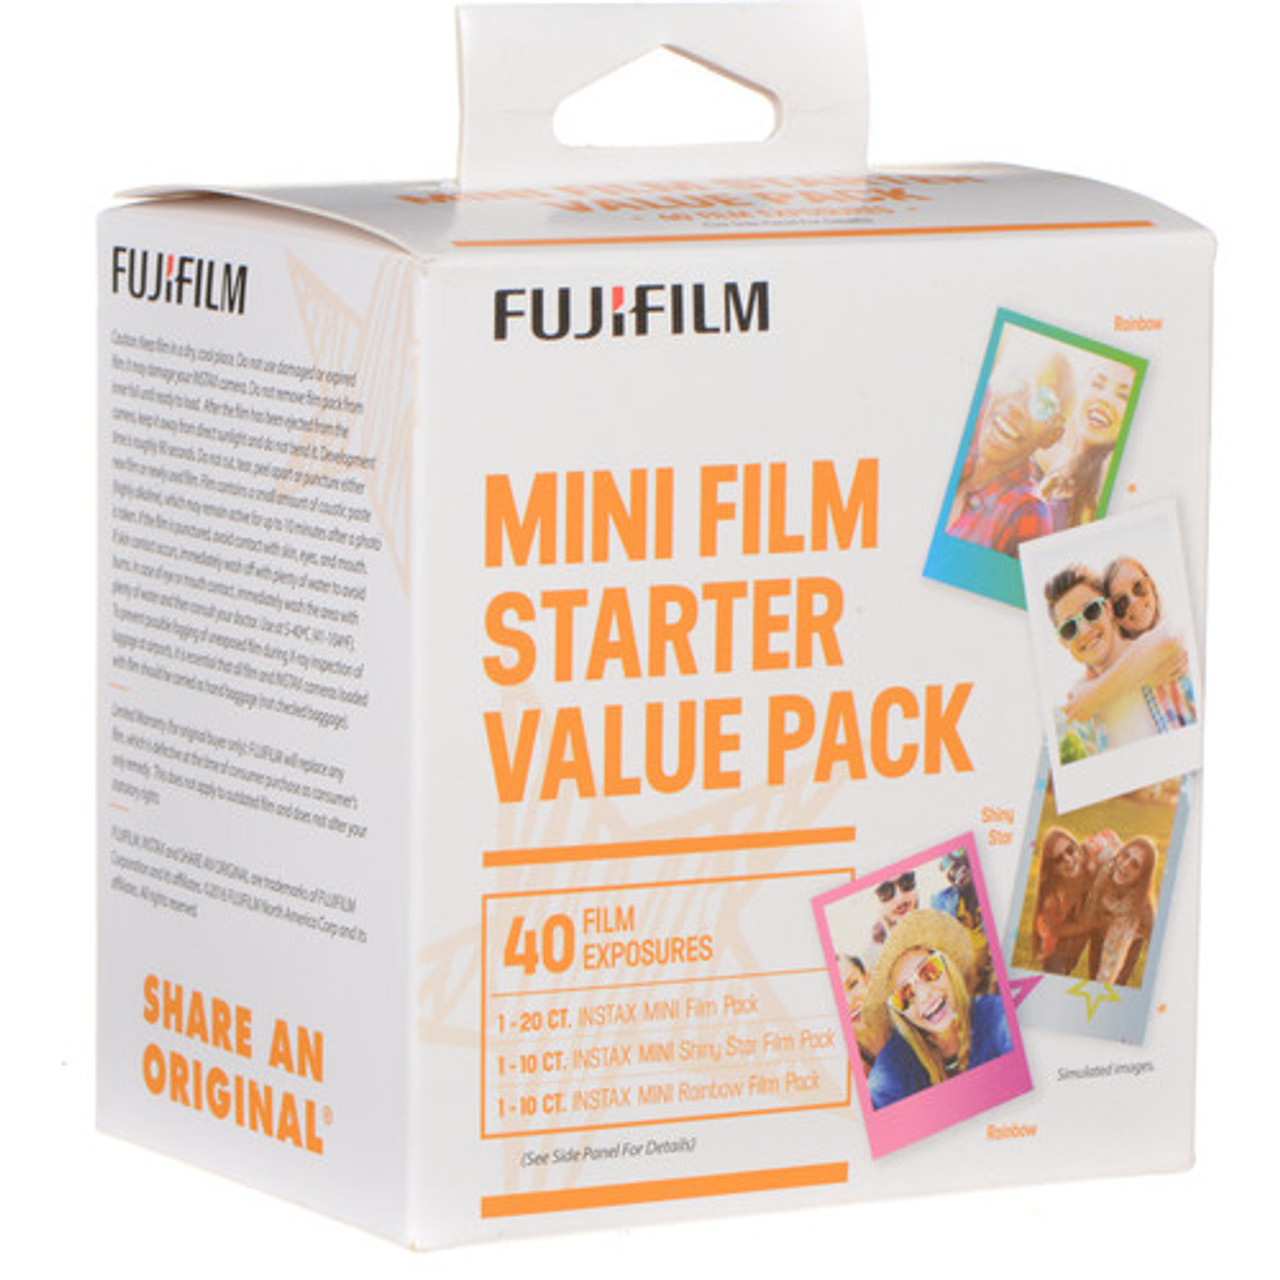 Fujifilm Instax Mini Instant Film Pack, 60 ct.